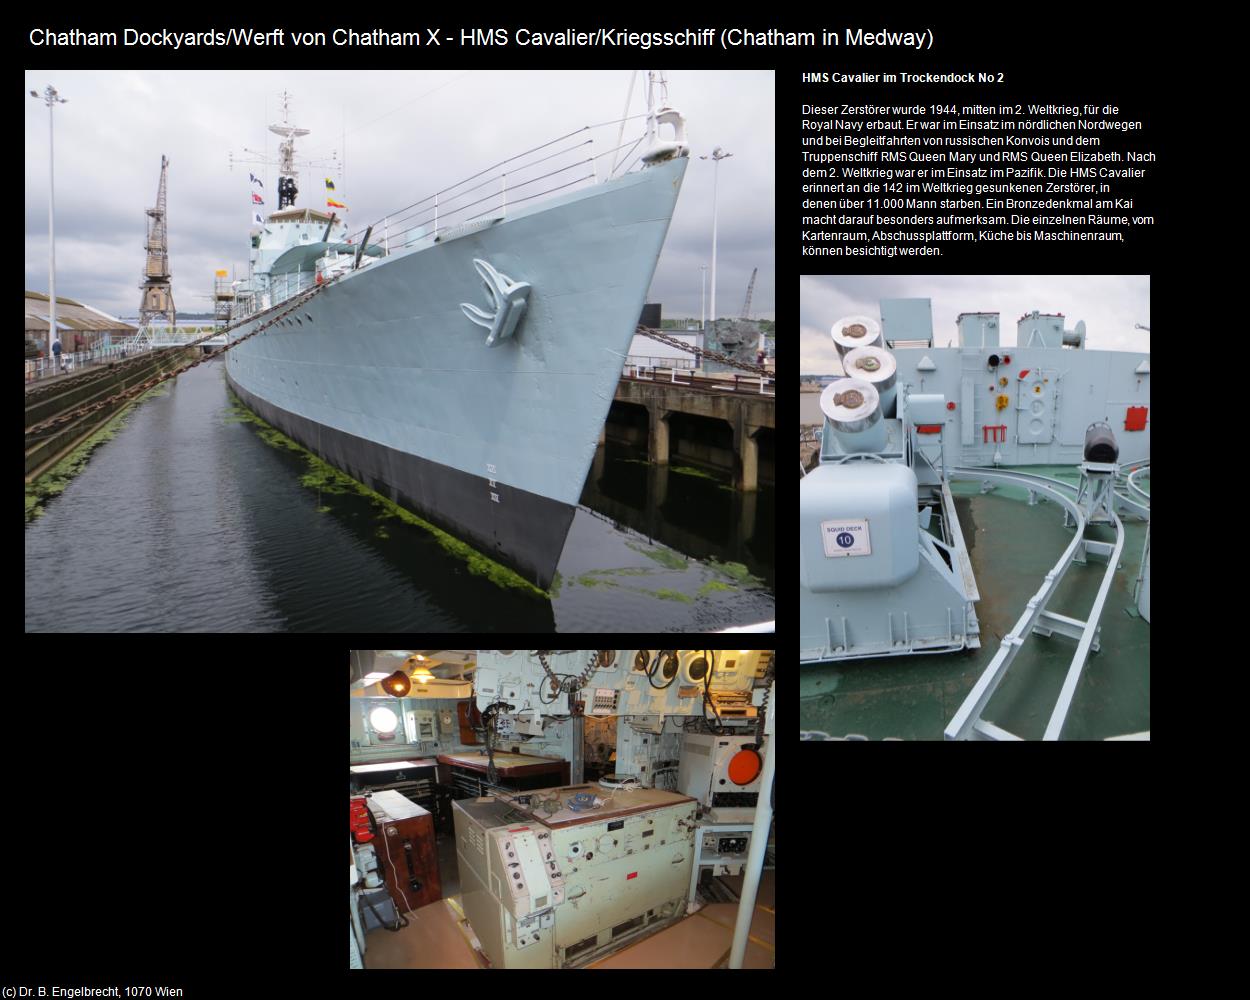 HMS Cavalier/Kriegsschiff (Chatham in Medway, England) in Kulturatlas-ENGLAND und WALES